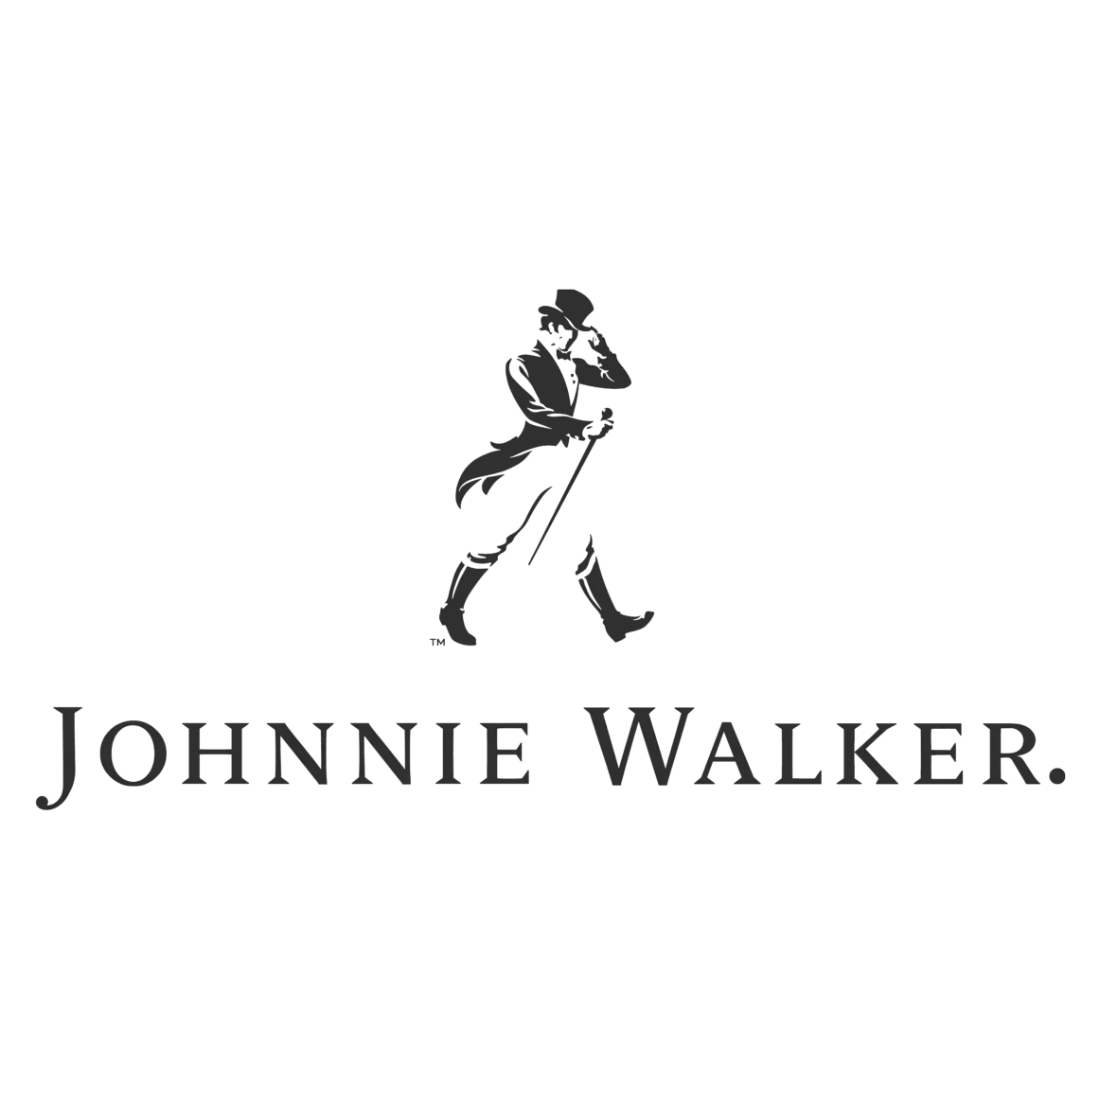 johnnie_walker_logo_samgilmore